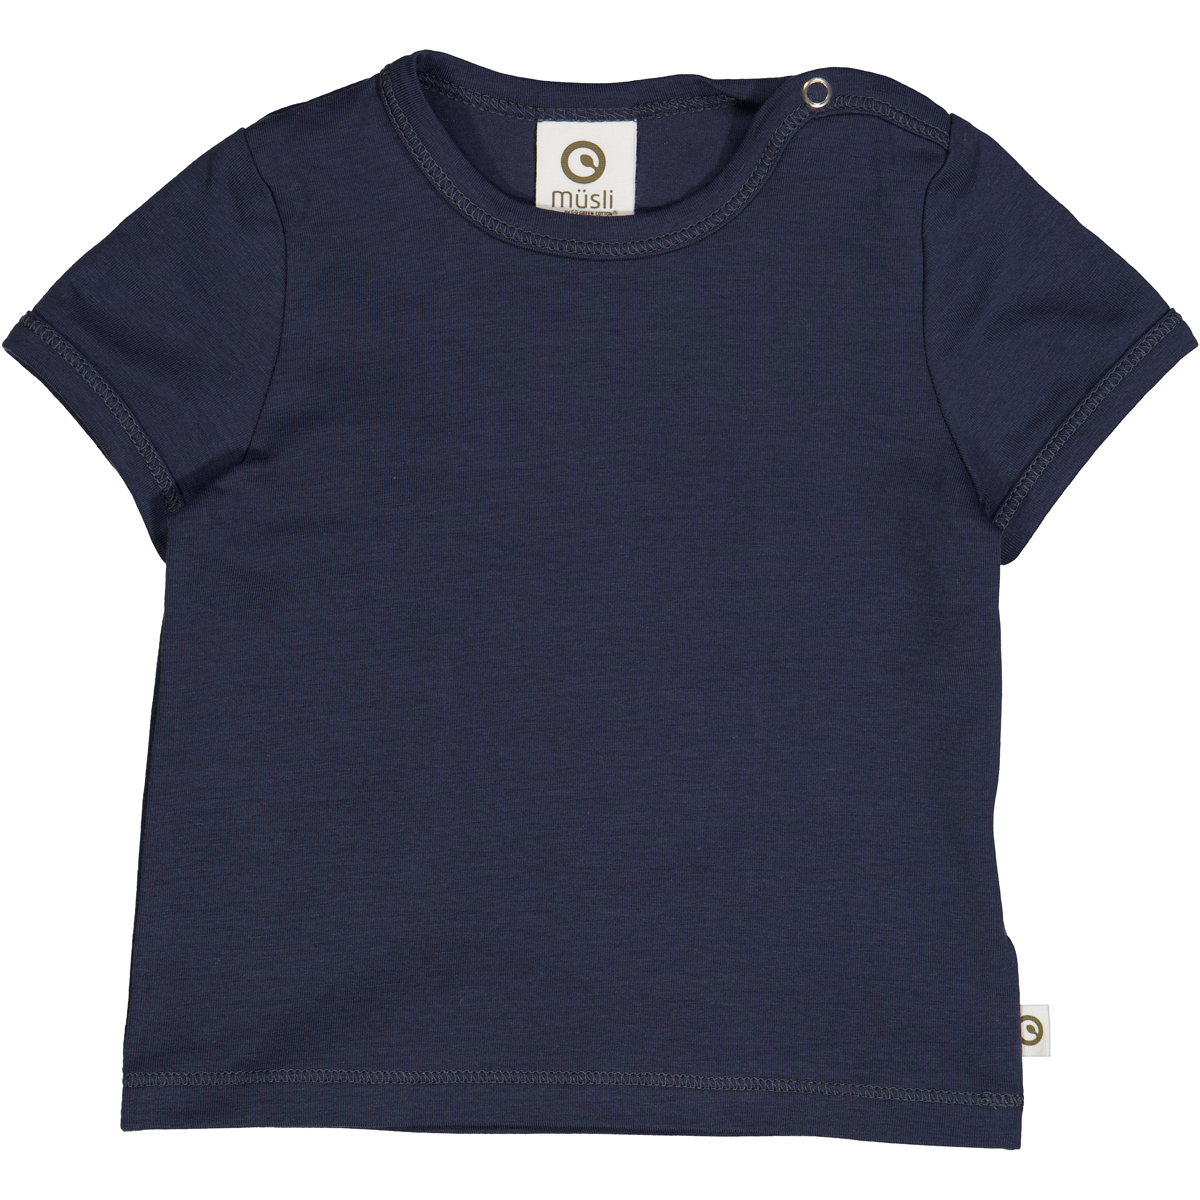 COZY ME – T-shirt – Night blue Müsli by Green Cotton